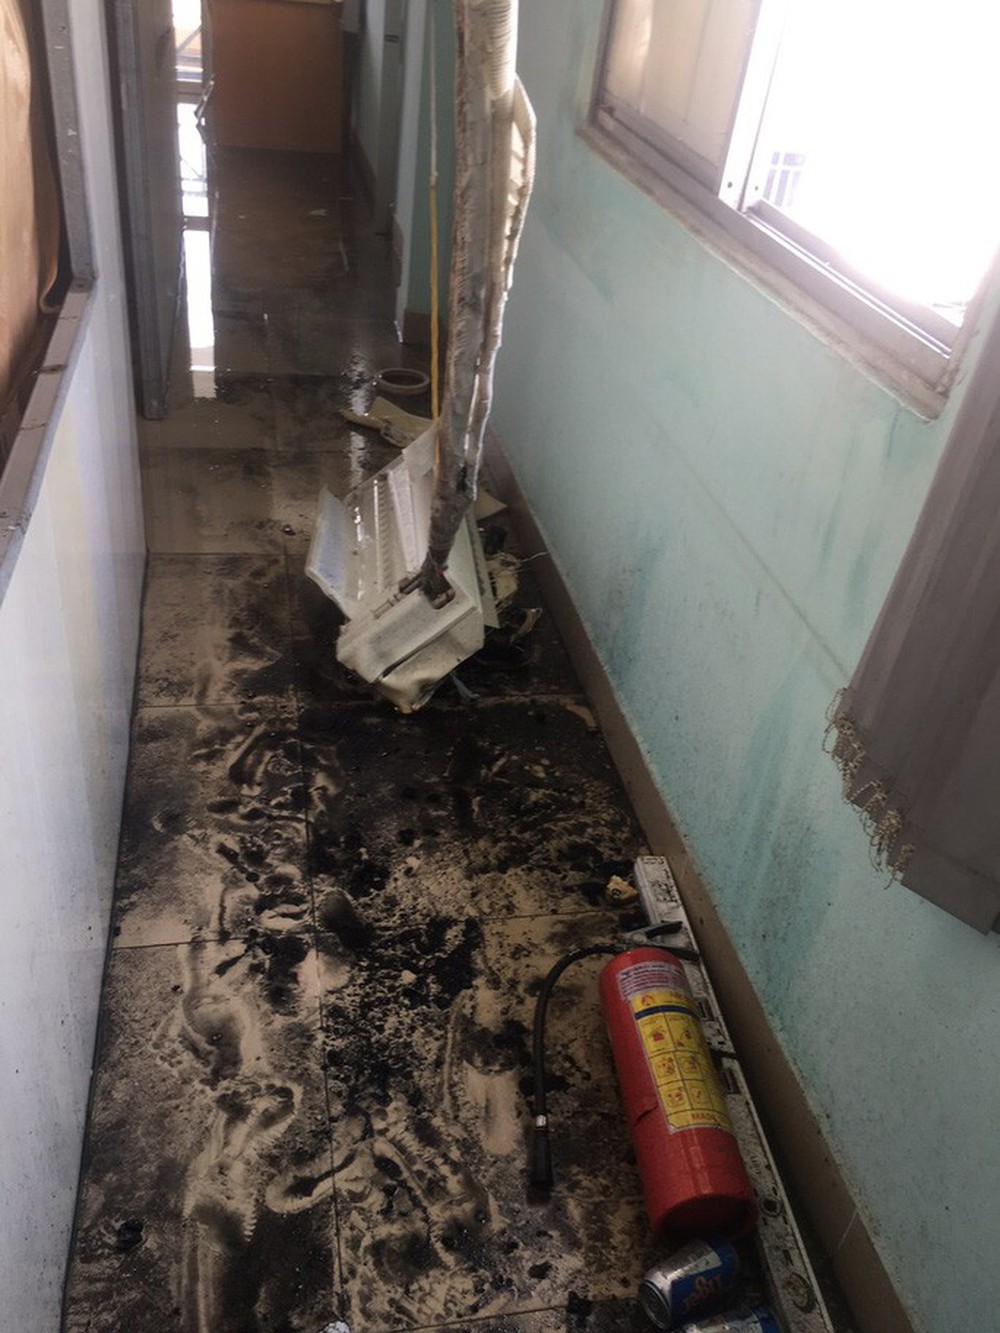 TP HCM: Hai vụ hỏa hoạn liên tiếp ở quận Gò Vấp, cứu được hai người mắc kẹt trong nhà 4 tầng - Ảnh 3.